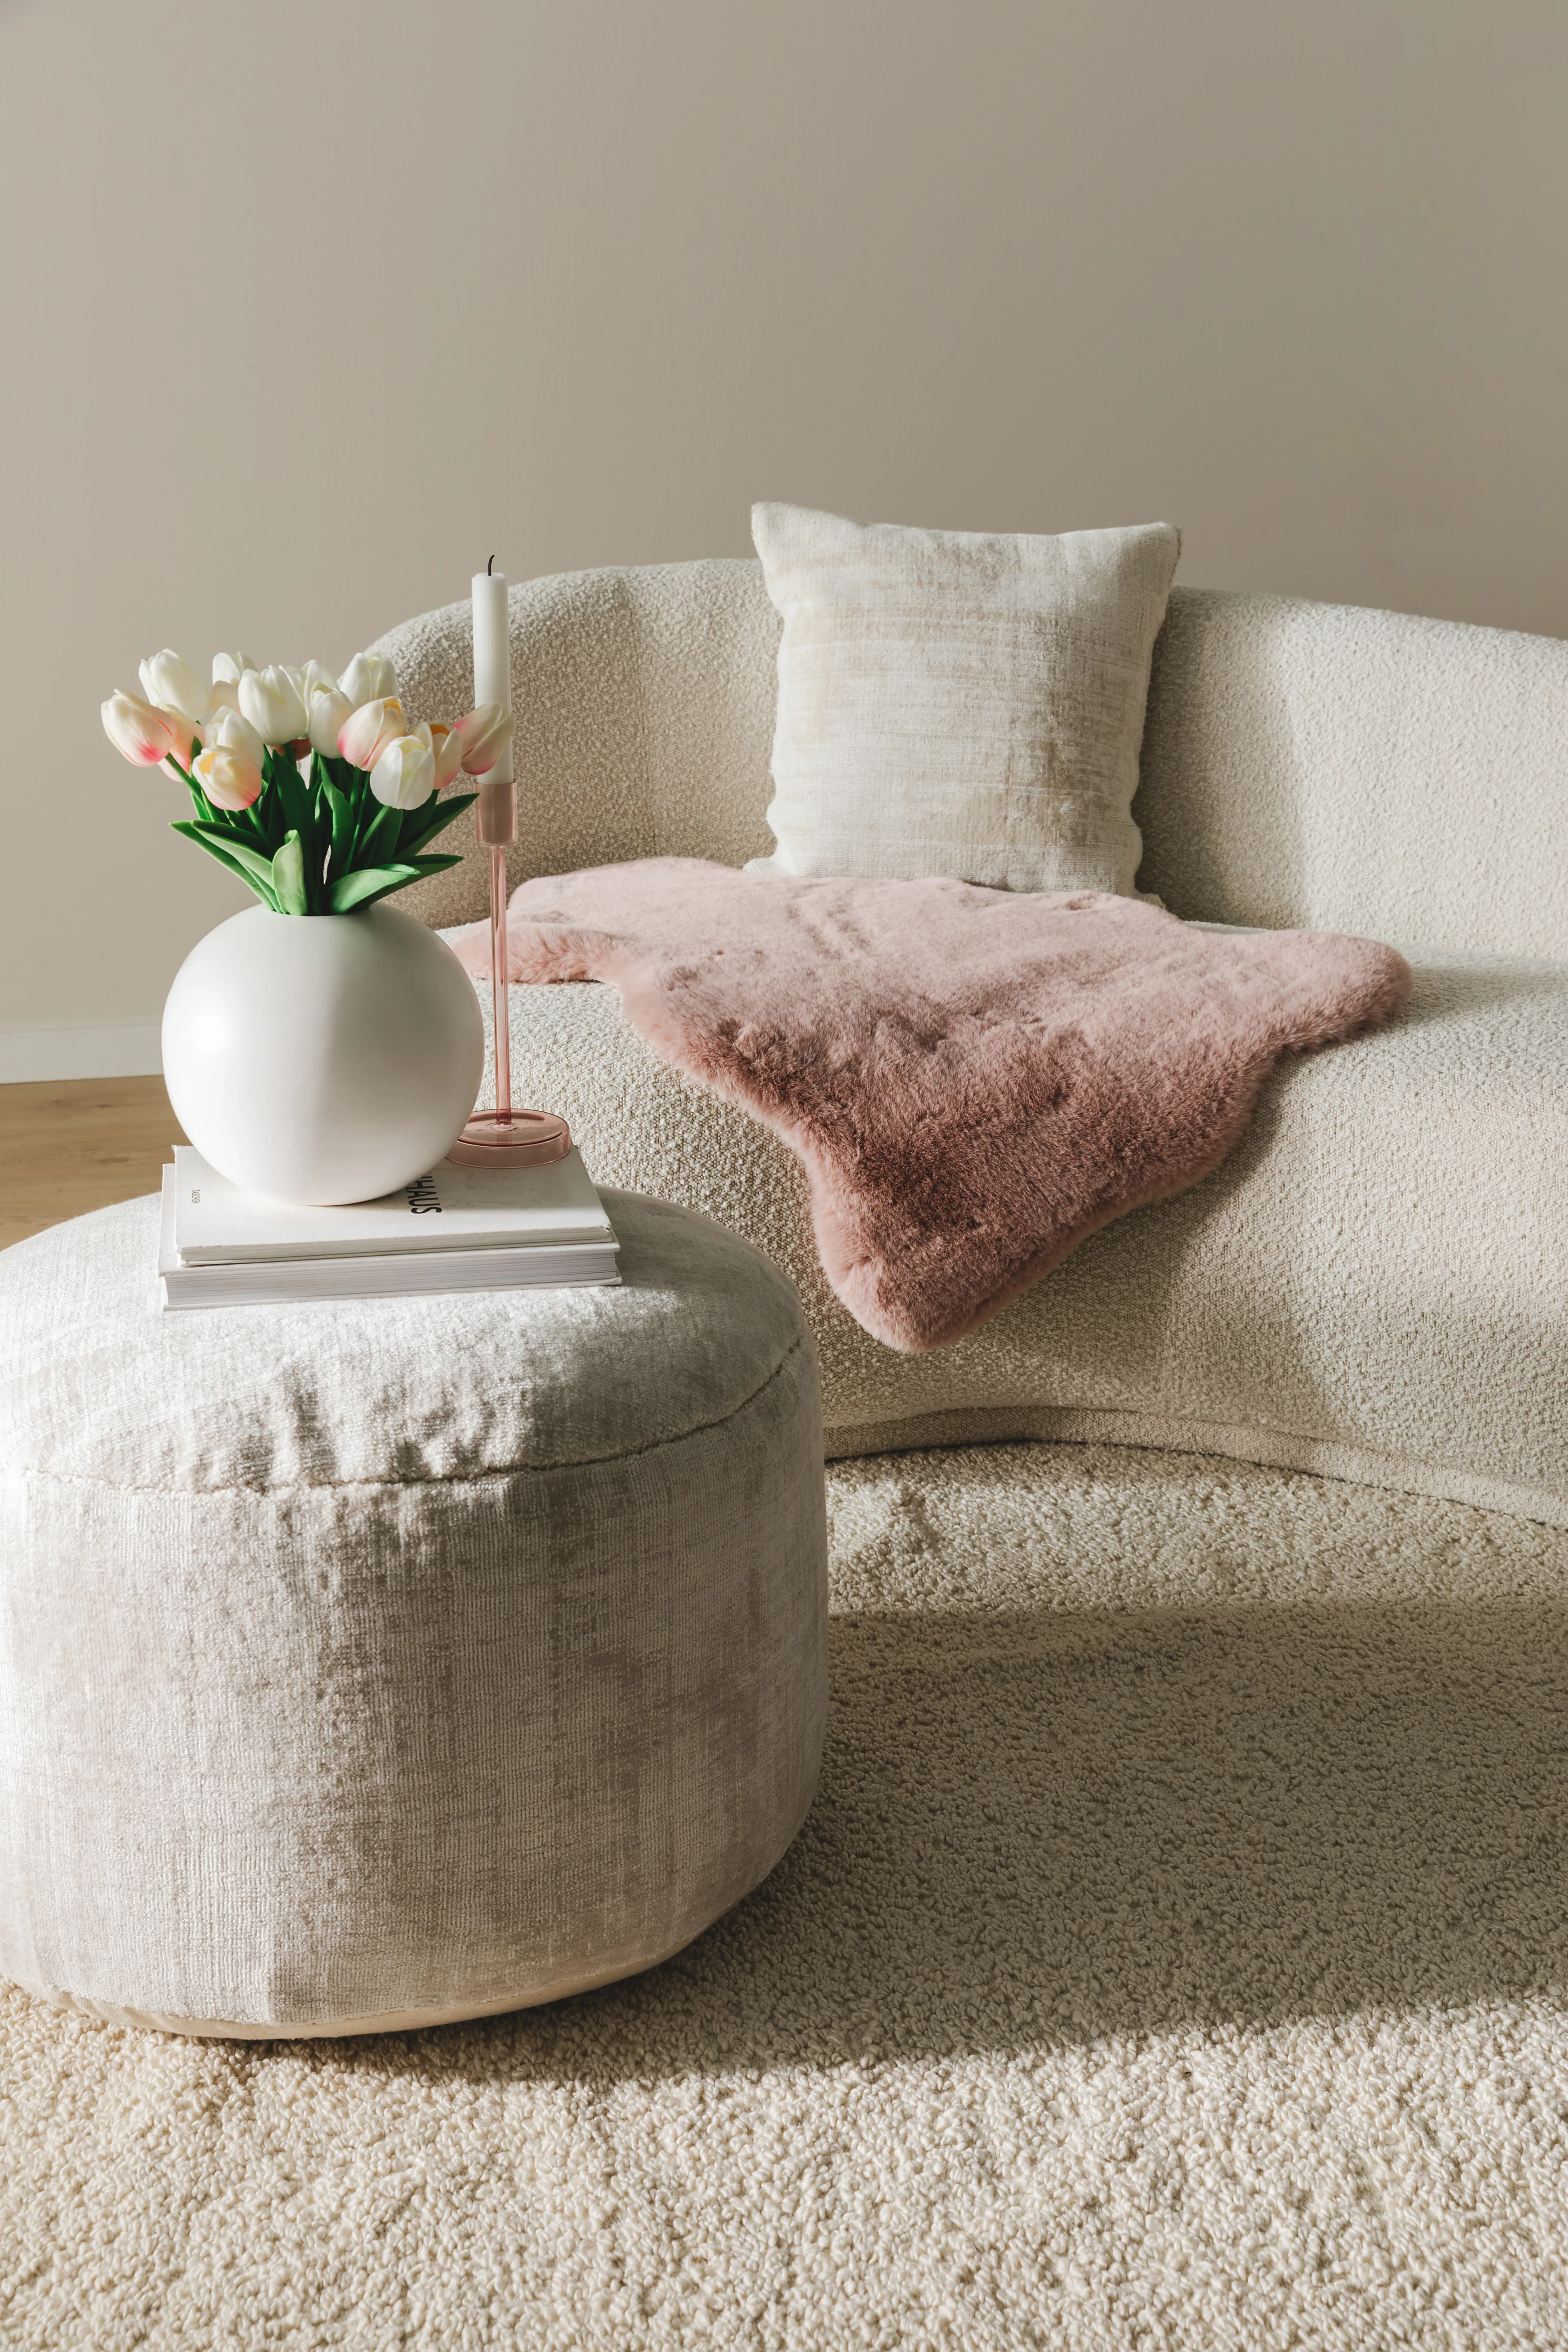 Weiches Deko-Kunstfell in Rosa drapiert auf einer cremefarbenen Couch in S-Form hinter einem hellen Pouf, auf dem Bücher und eine helle Vase mit weißen Tuplen als Valentinstagsgeschenk stehen